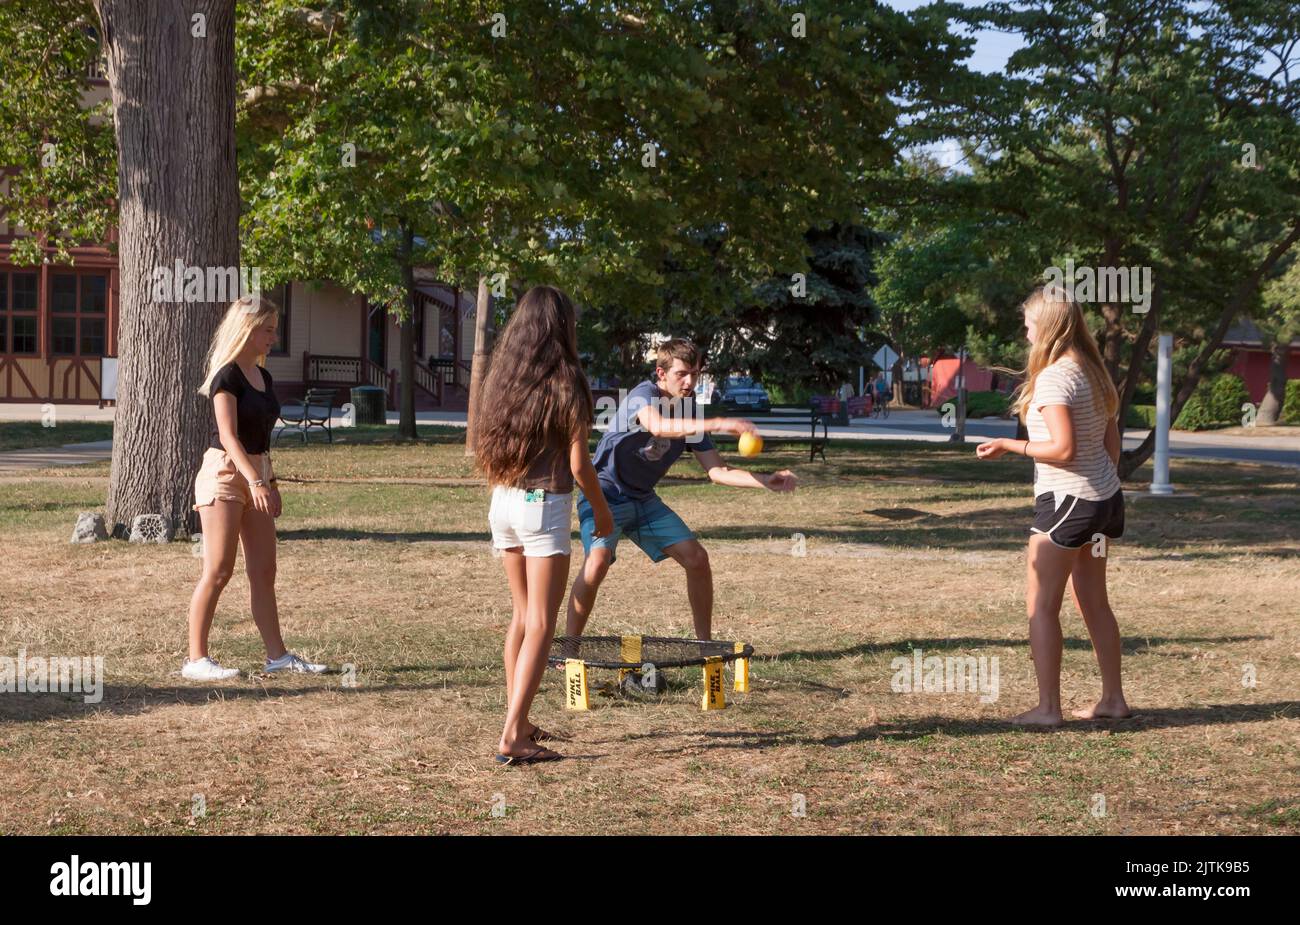 Vier junge gemischte Erwachsene spielen das Roundnet-Sportspiel Spikeball im Freien. Stockfoto